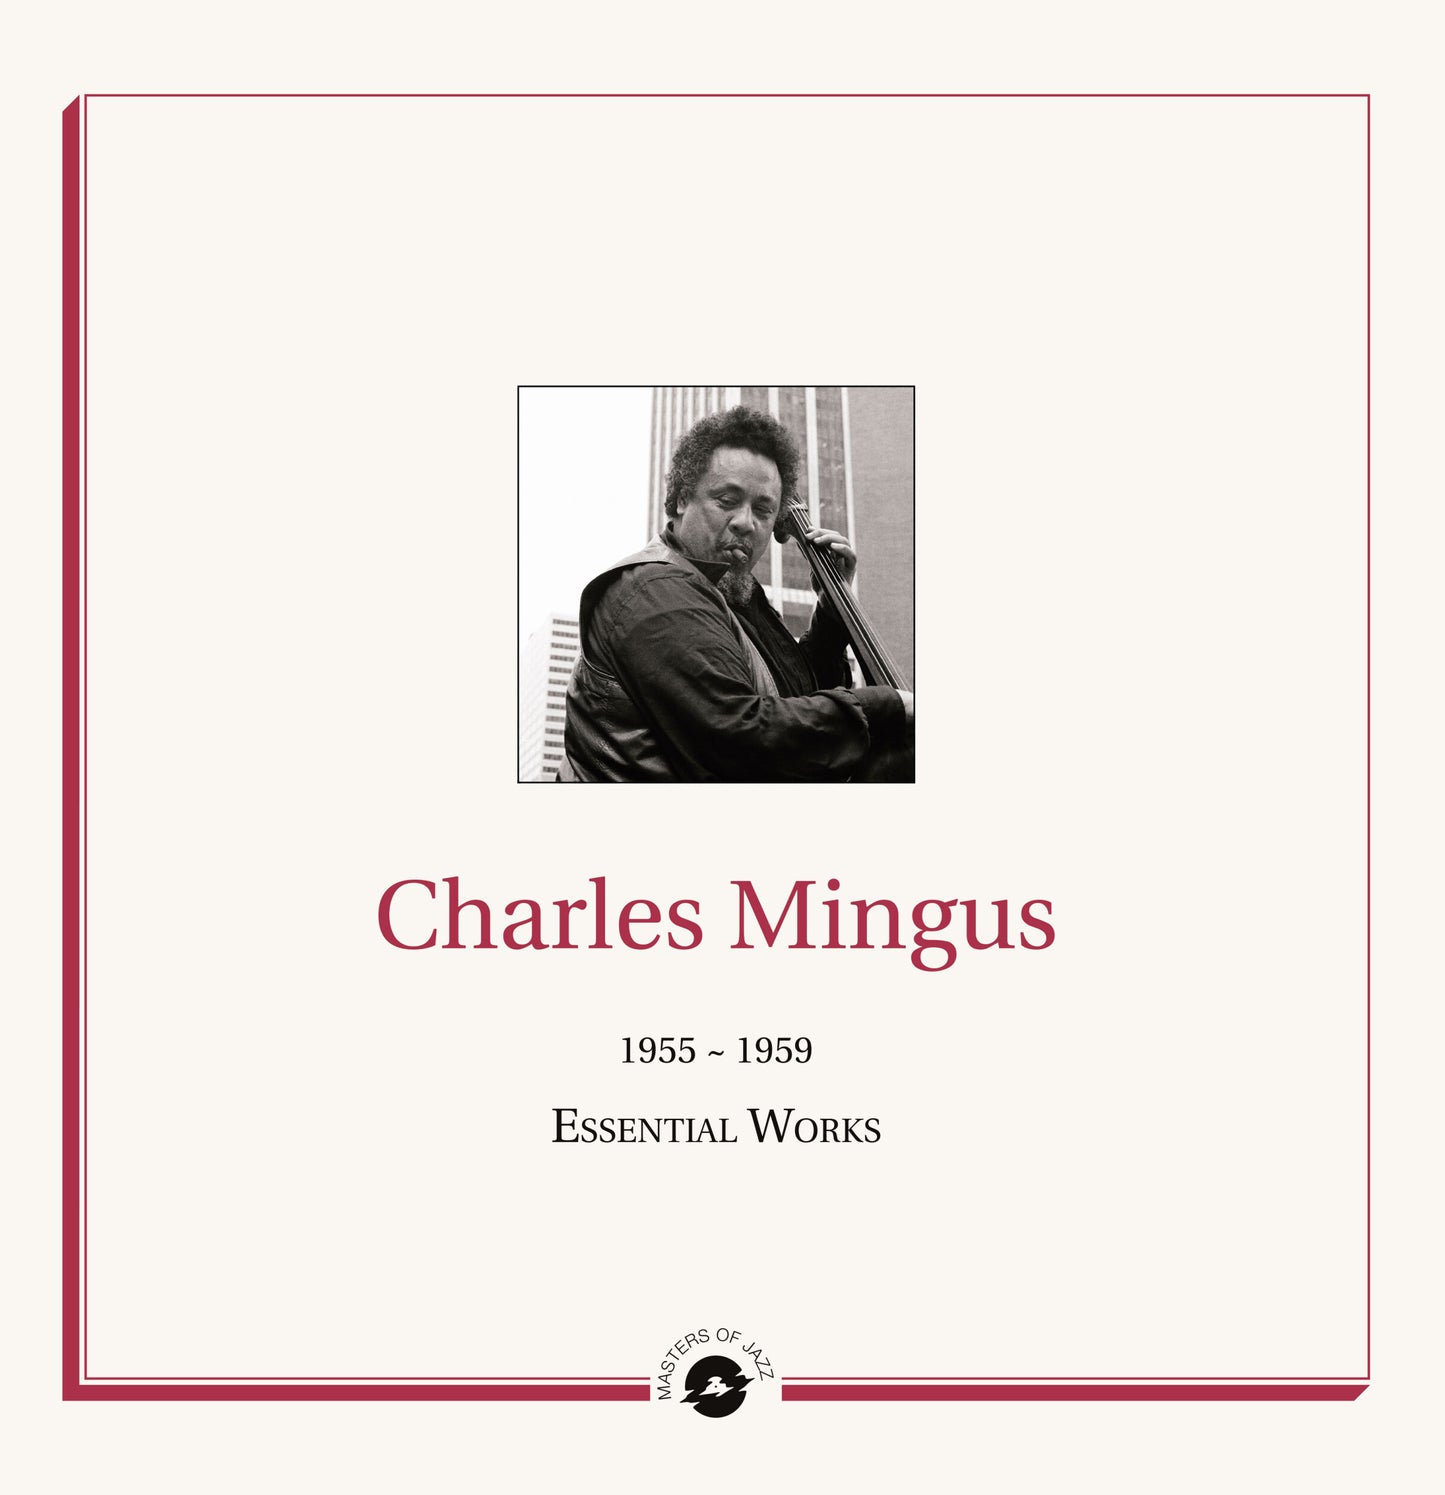 Charles Mingus - Essential Works: 1955-1959 - 2LP